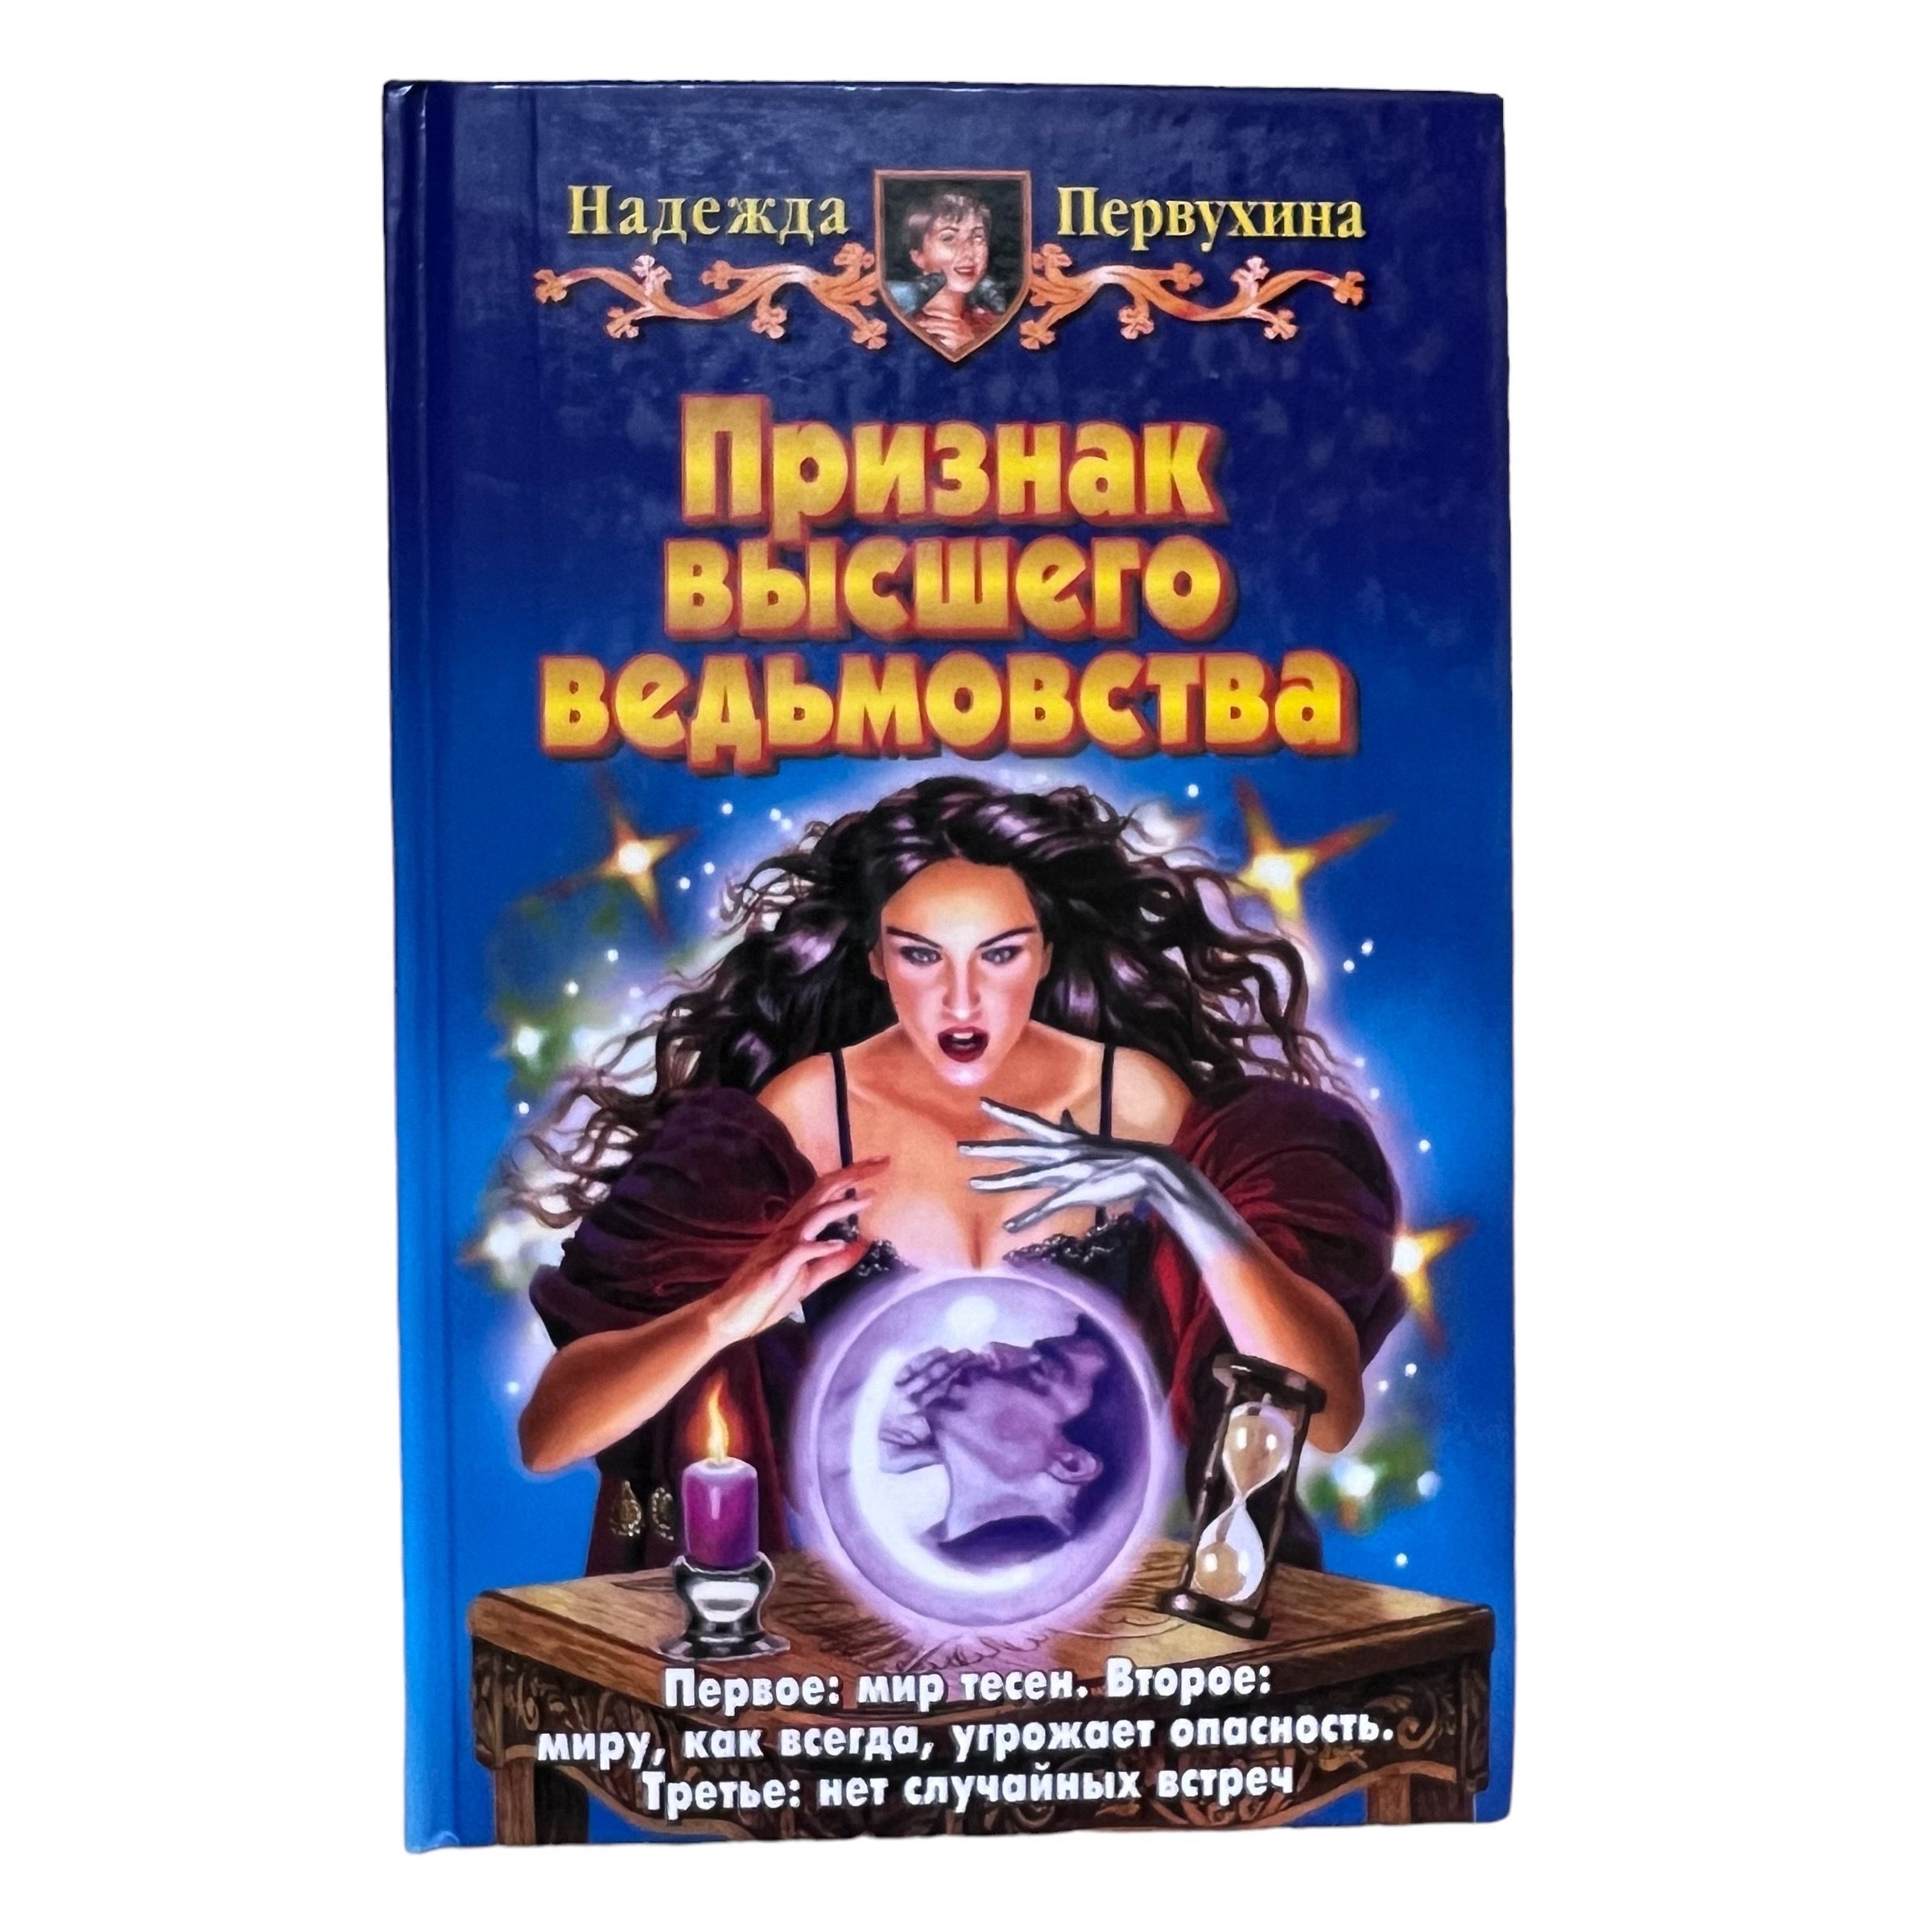 Цикл книг первухина андрея. Купить в Новосибирске книгу Петербург для детей Первухина.